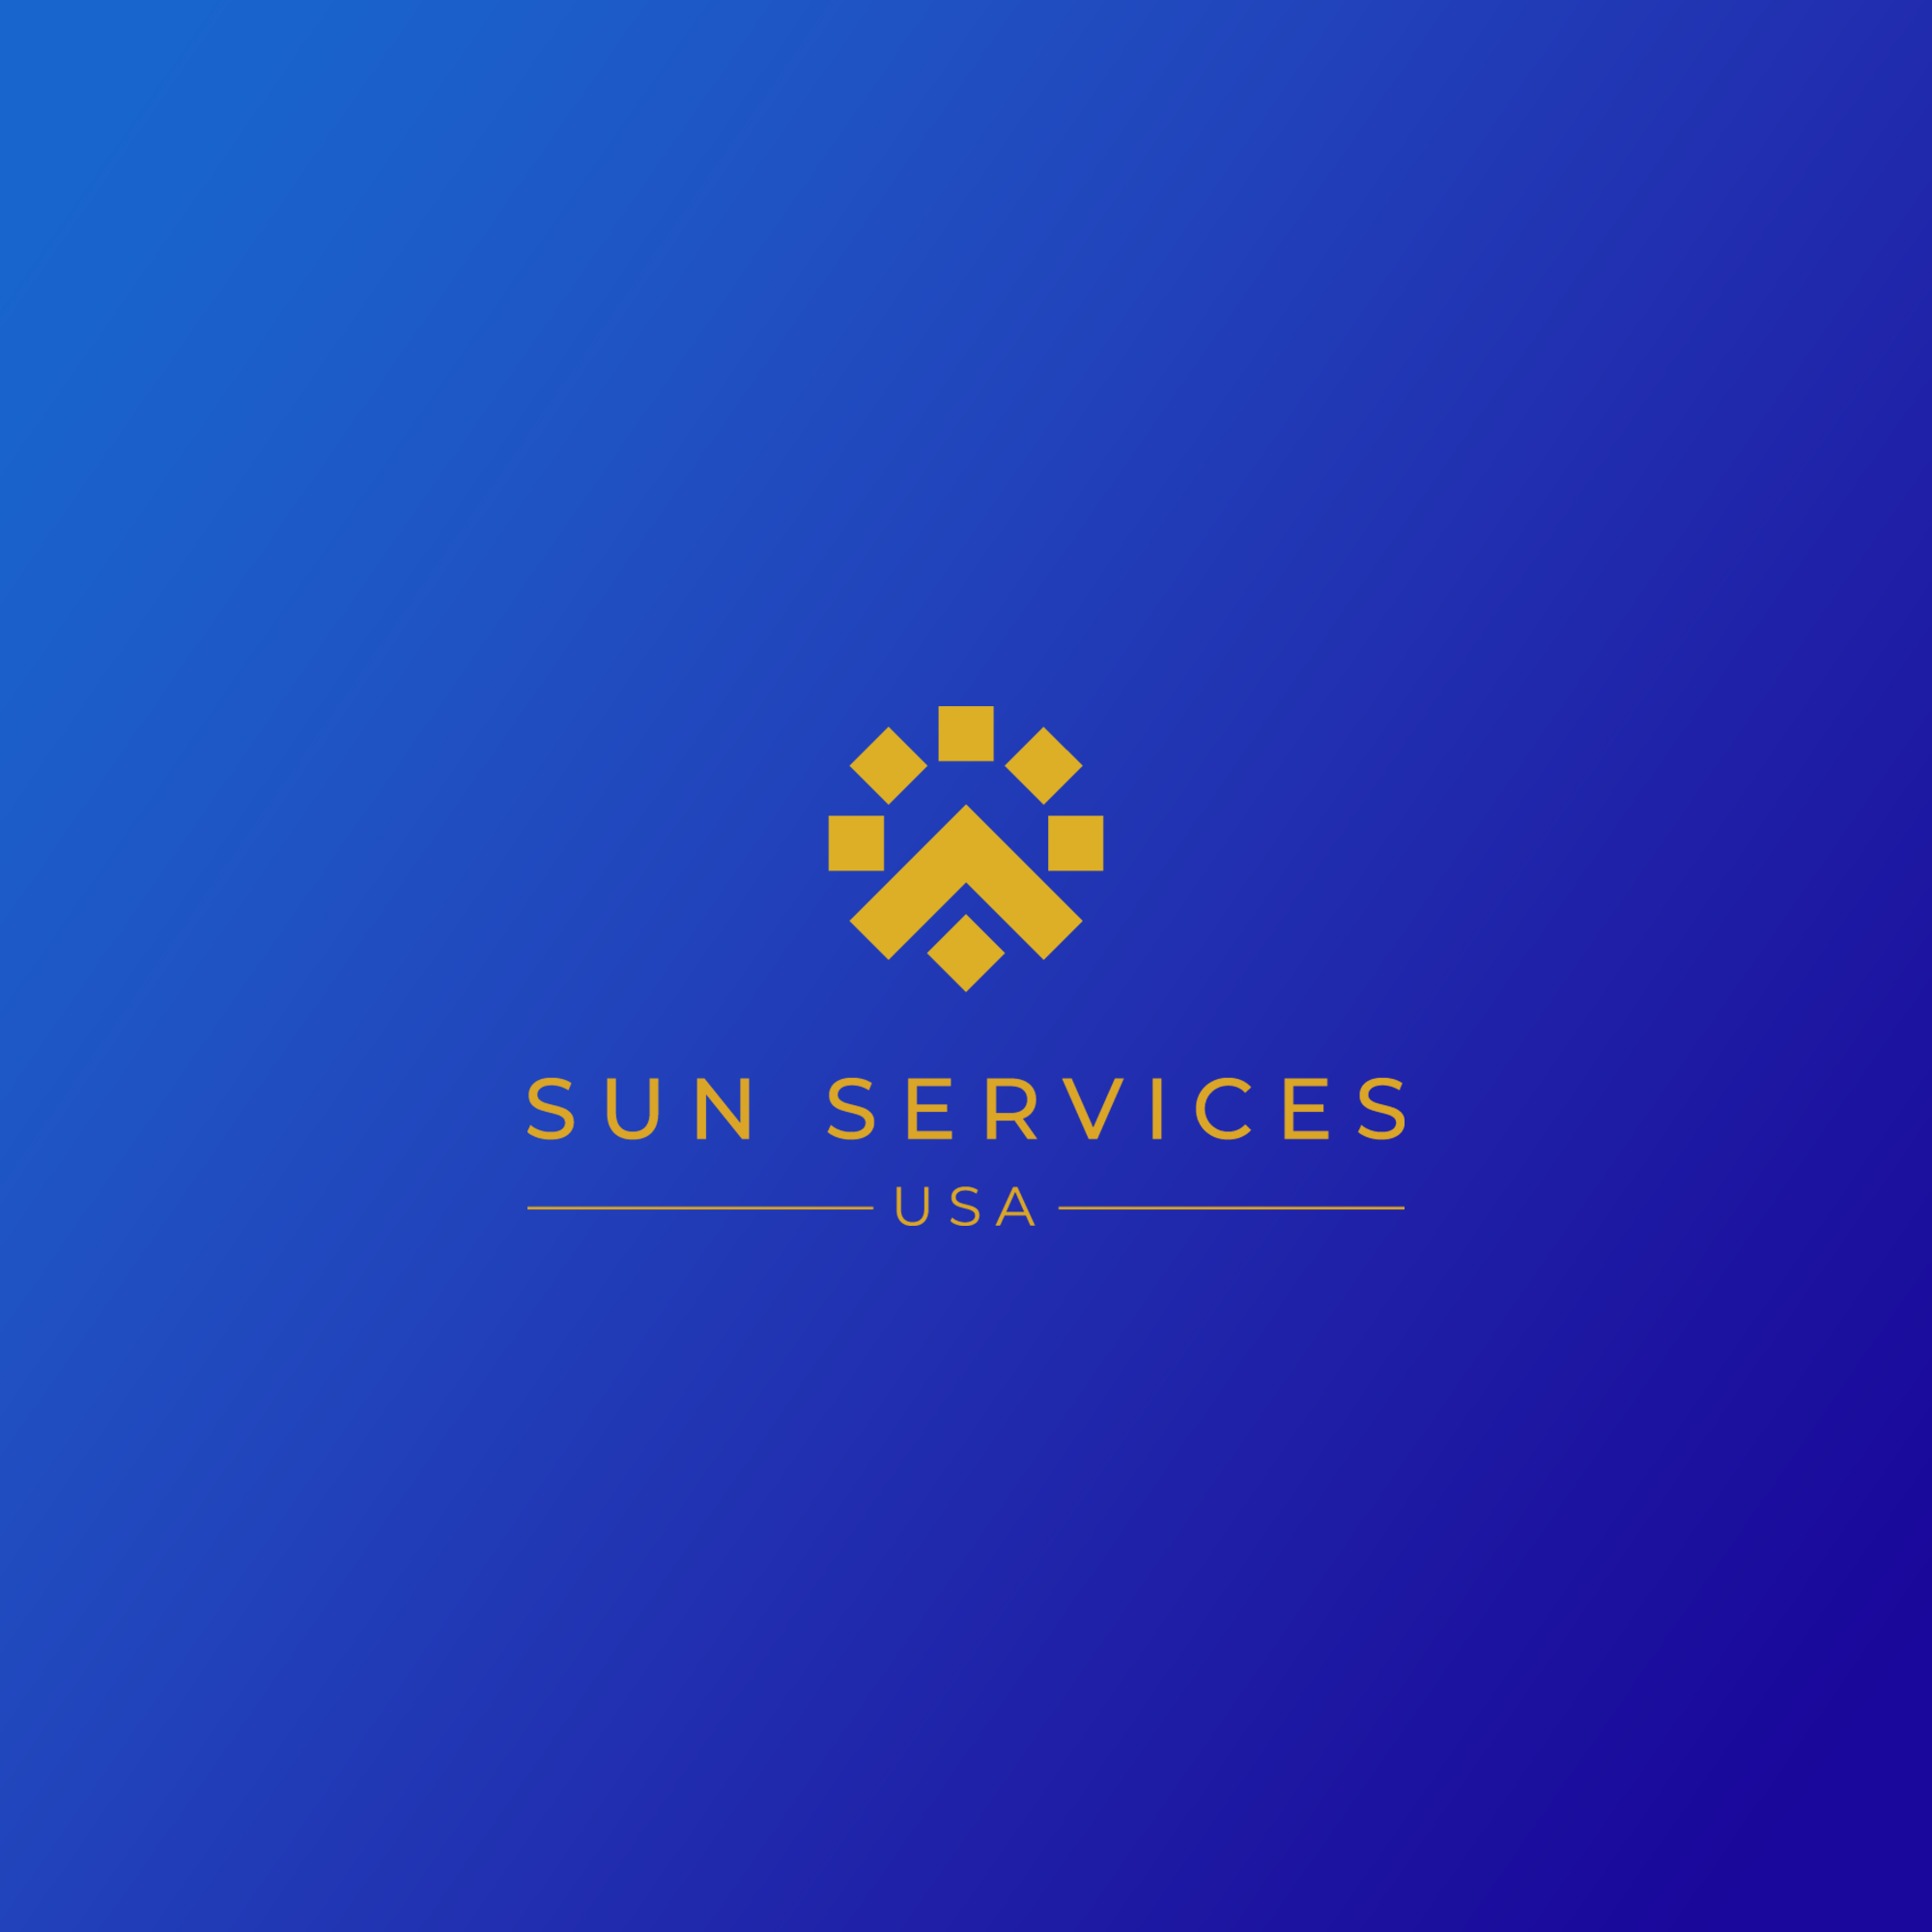 Sun Services USA logo